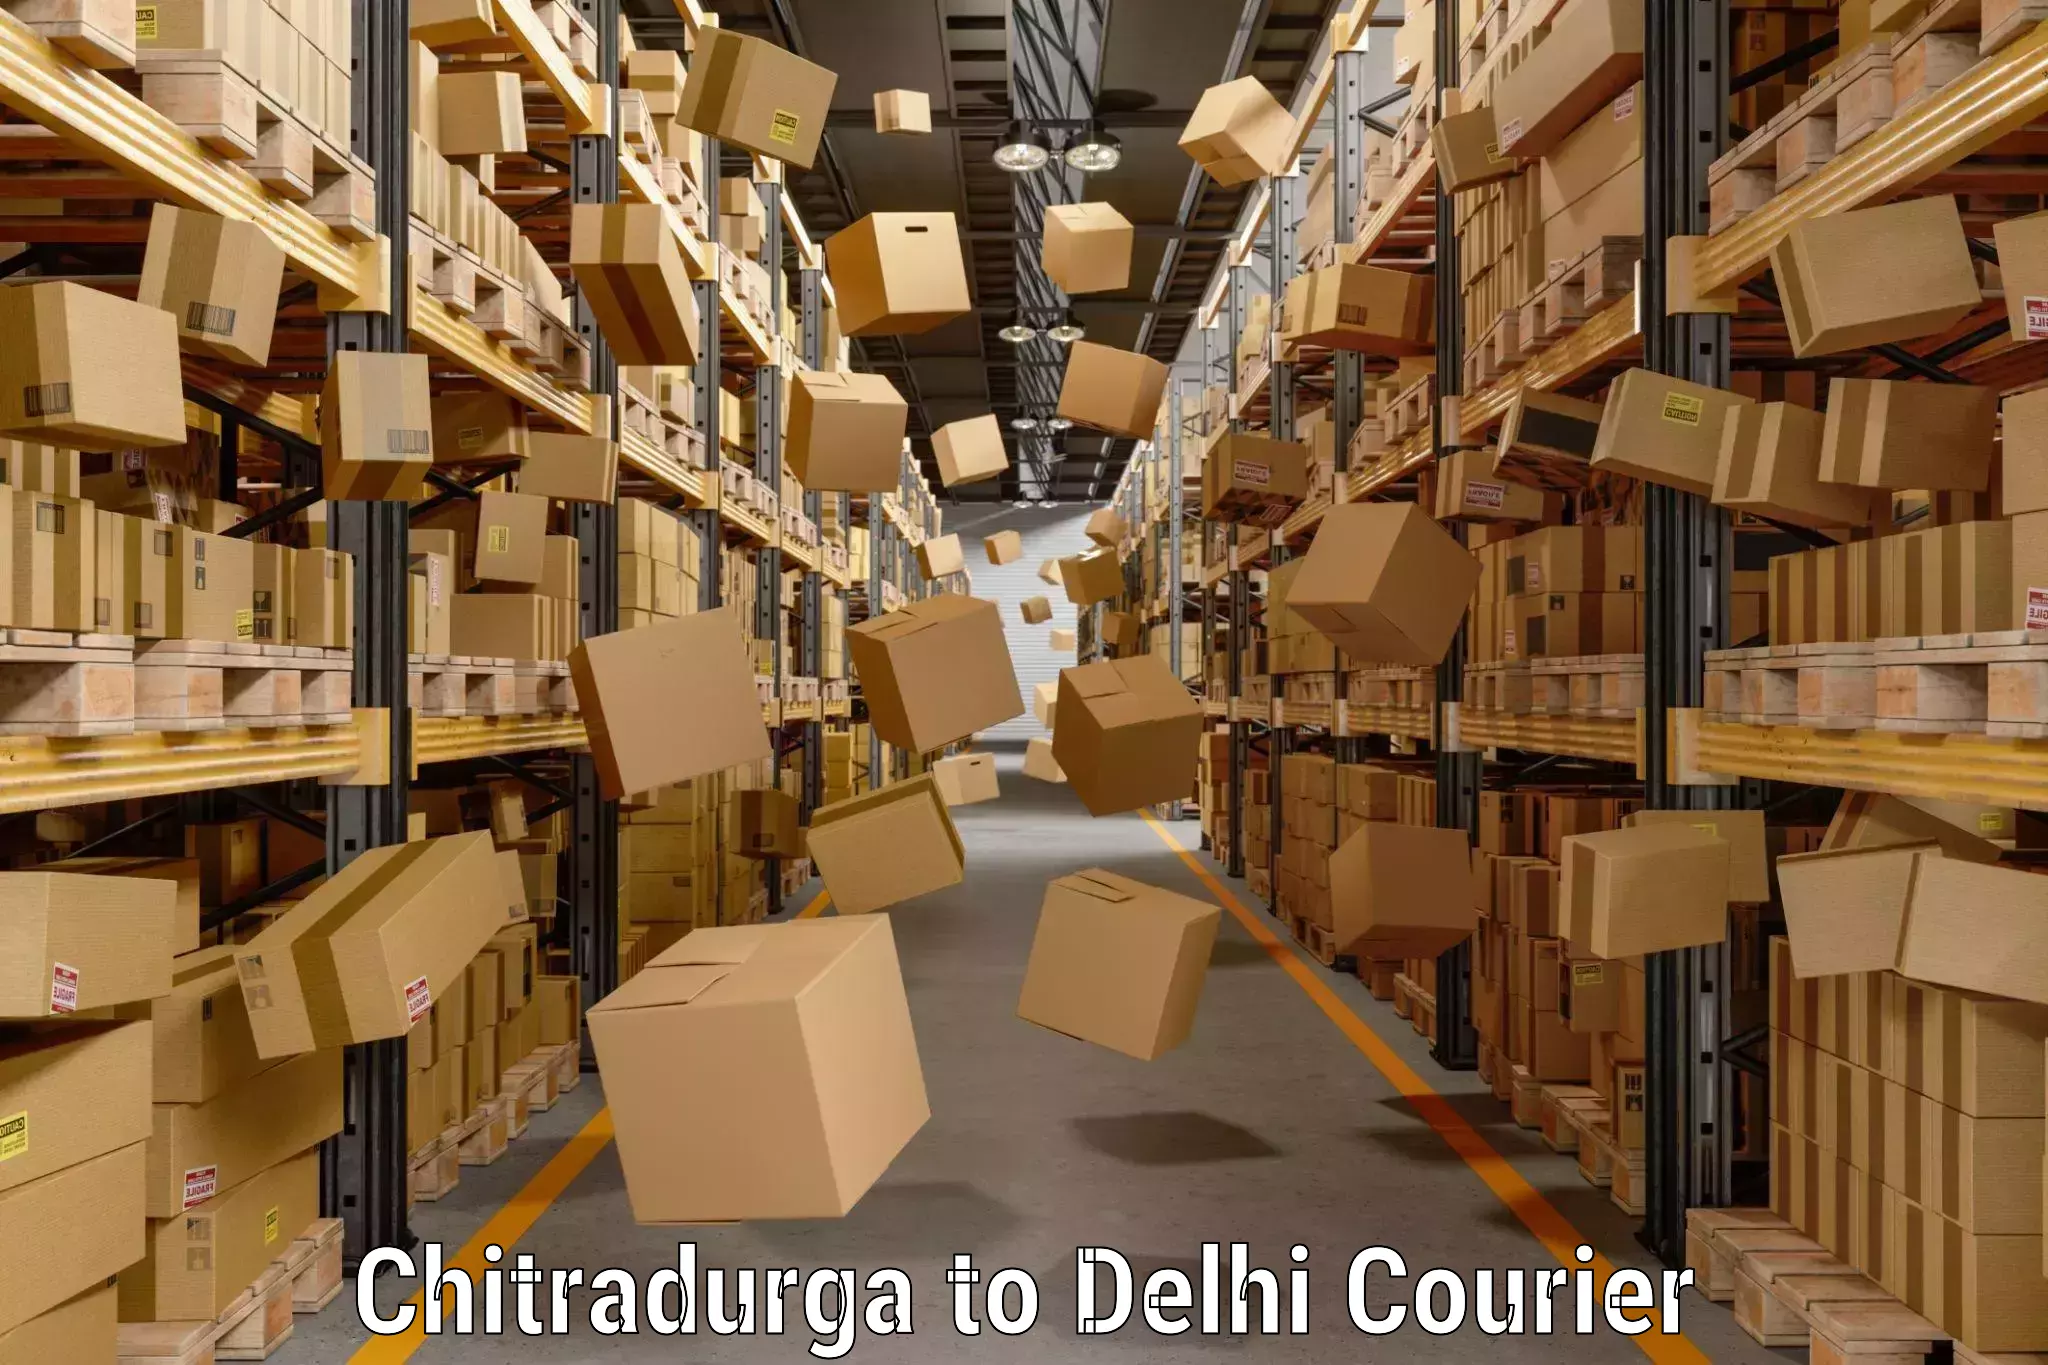 Luggage delivery app Chitradurga to Delhi